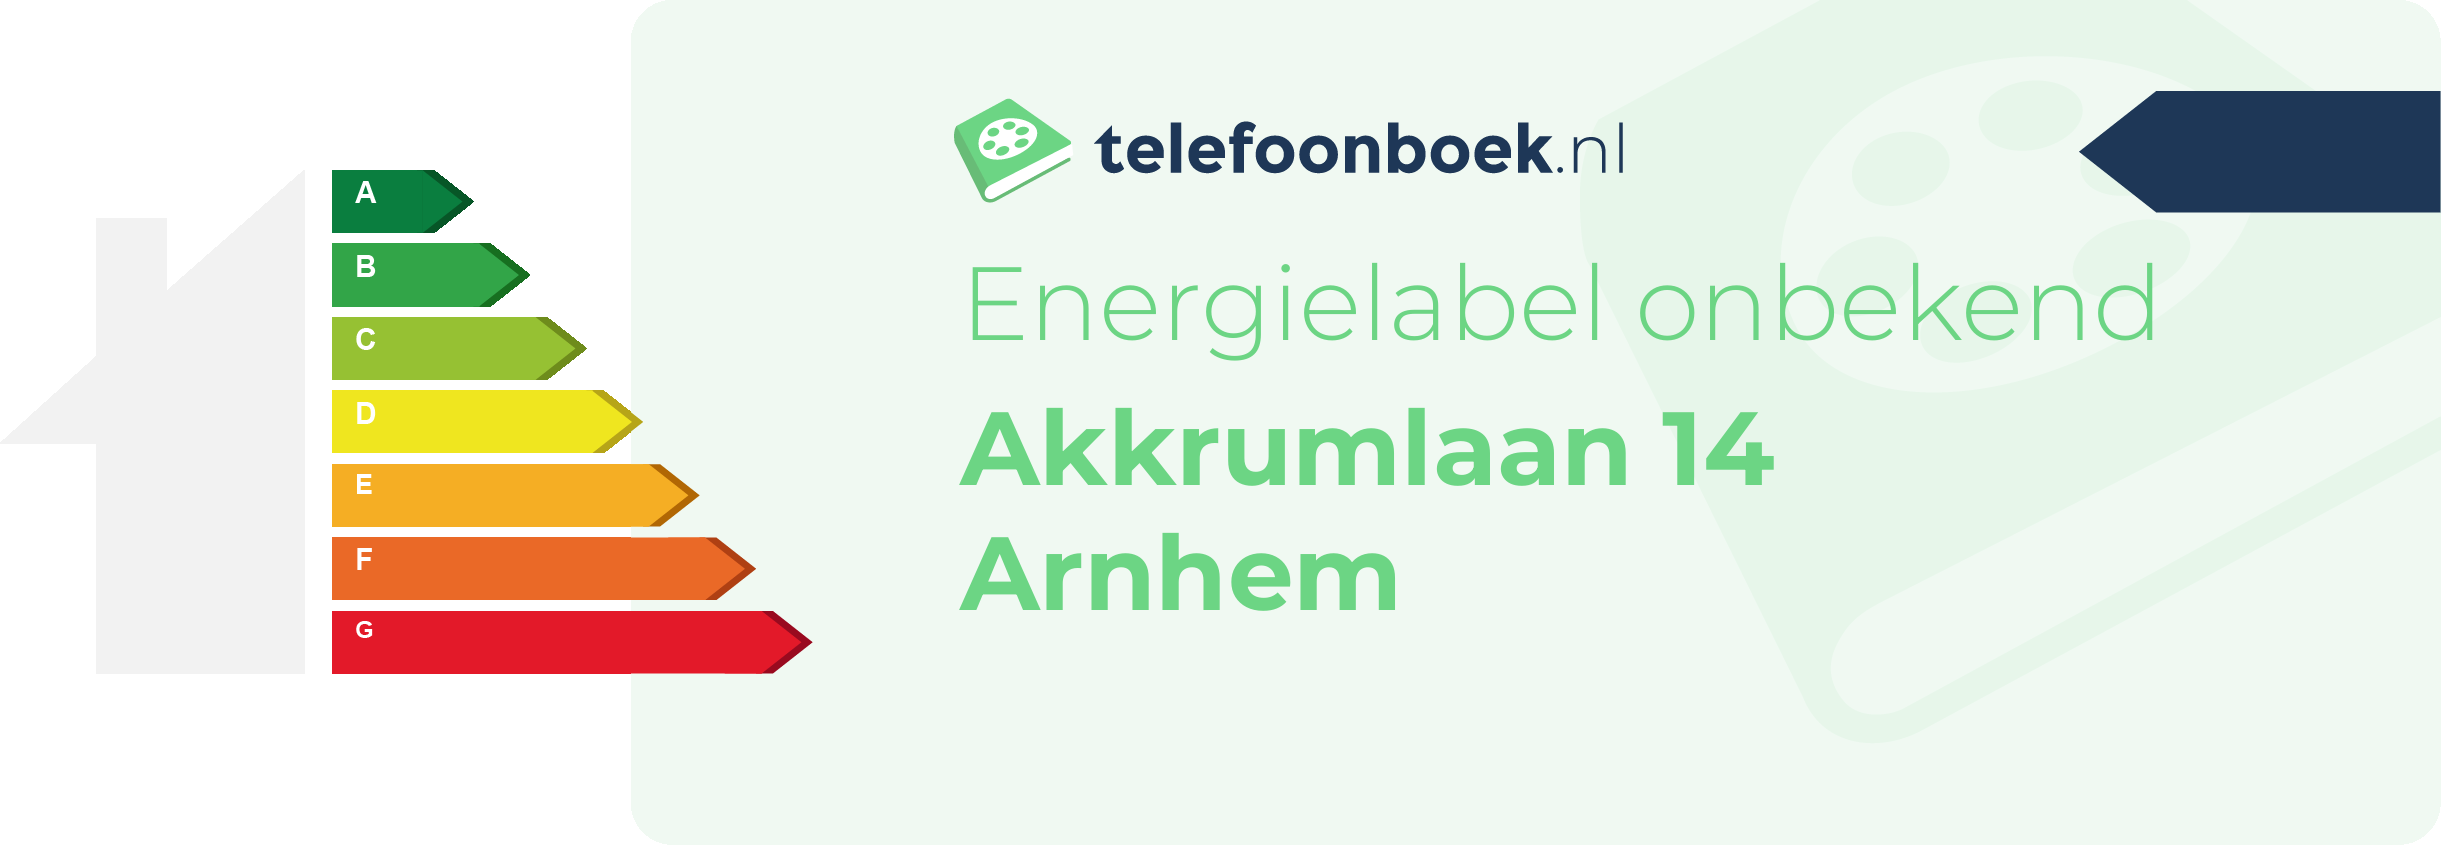 Energielabel Akkrumlaan 14 Arnhem